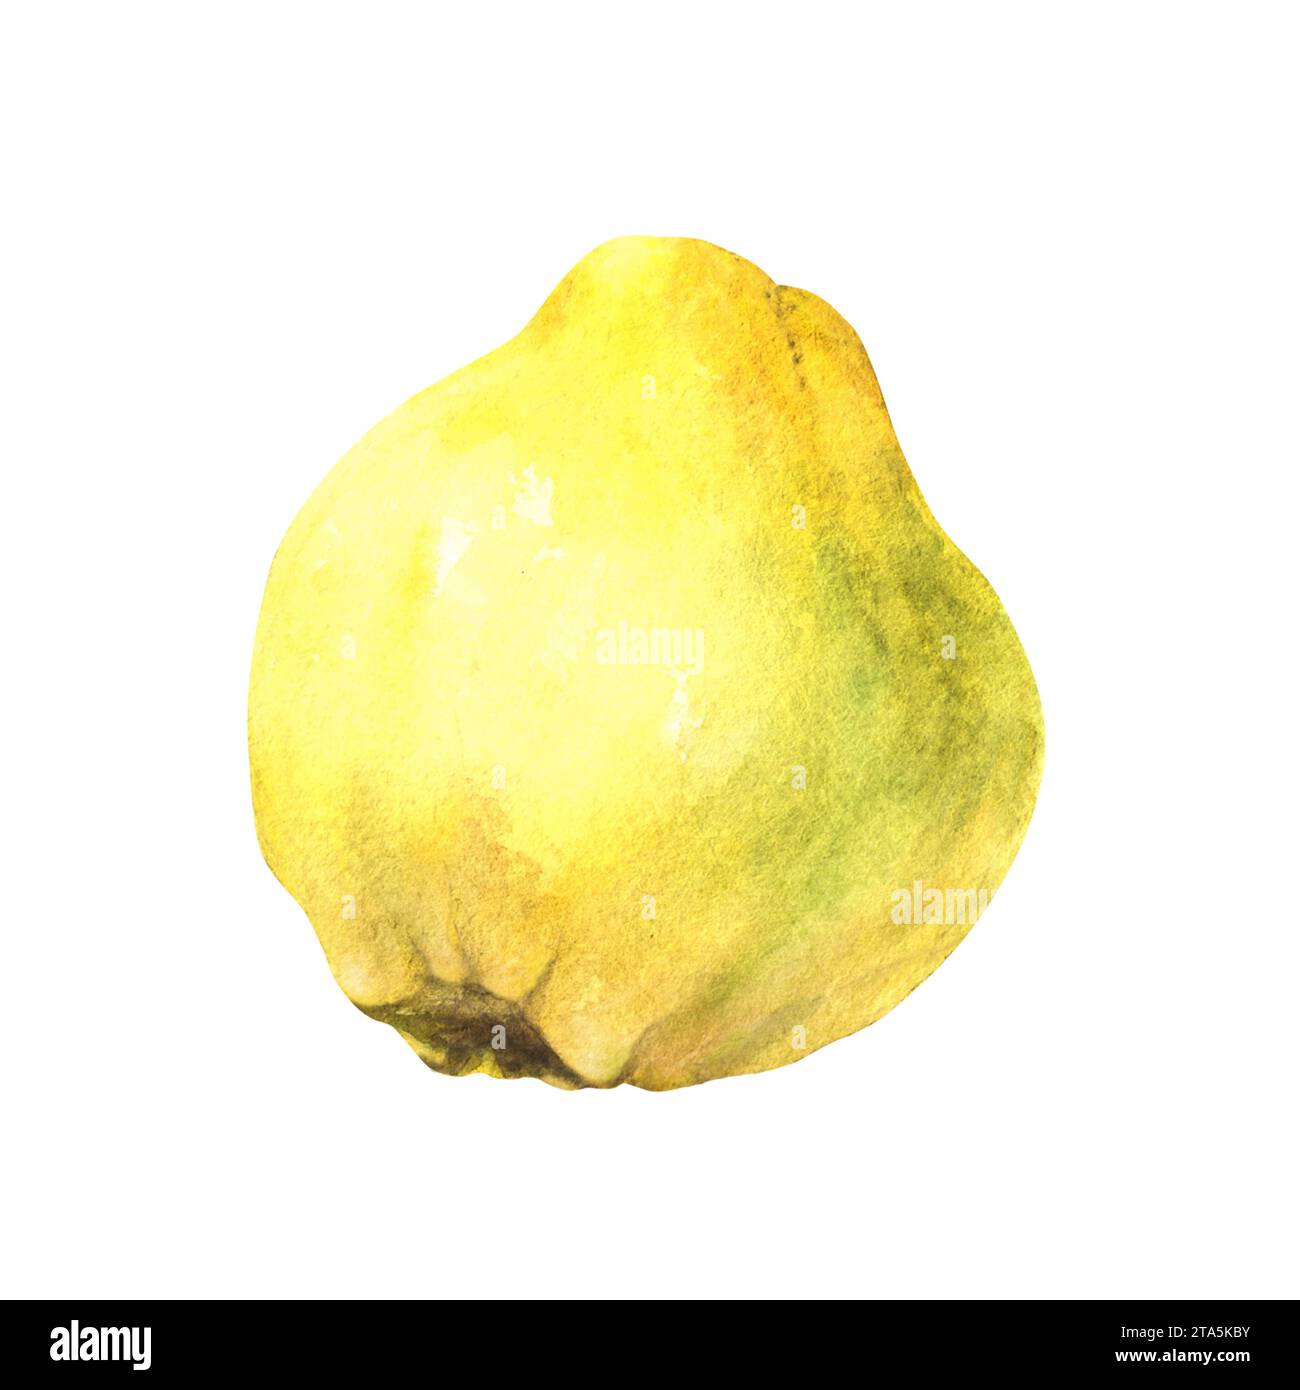 Handgemalte Aquarellillustration der gelben saftigen Quitte ganze reife Früchte. Clipart-Illustration für Aufkleber, Lebensmittel- oder Getränkeetiketten, Druck Stockfoto